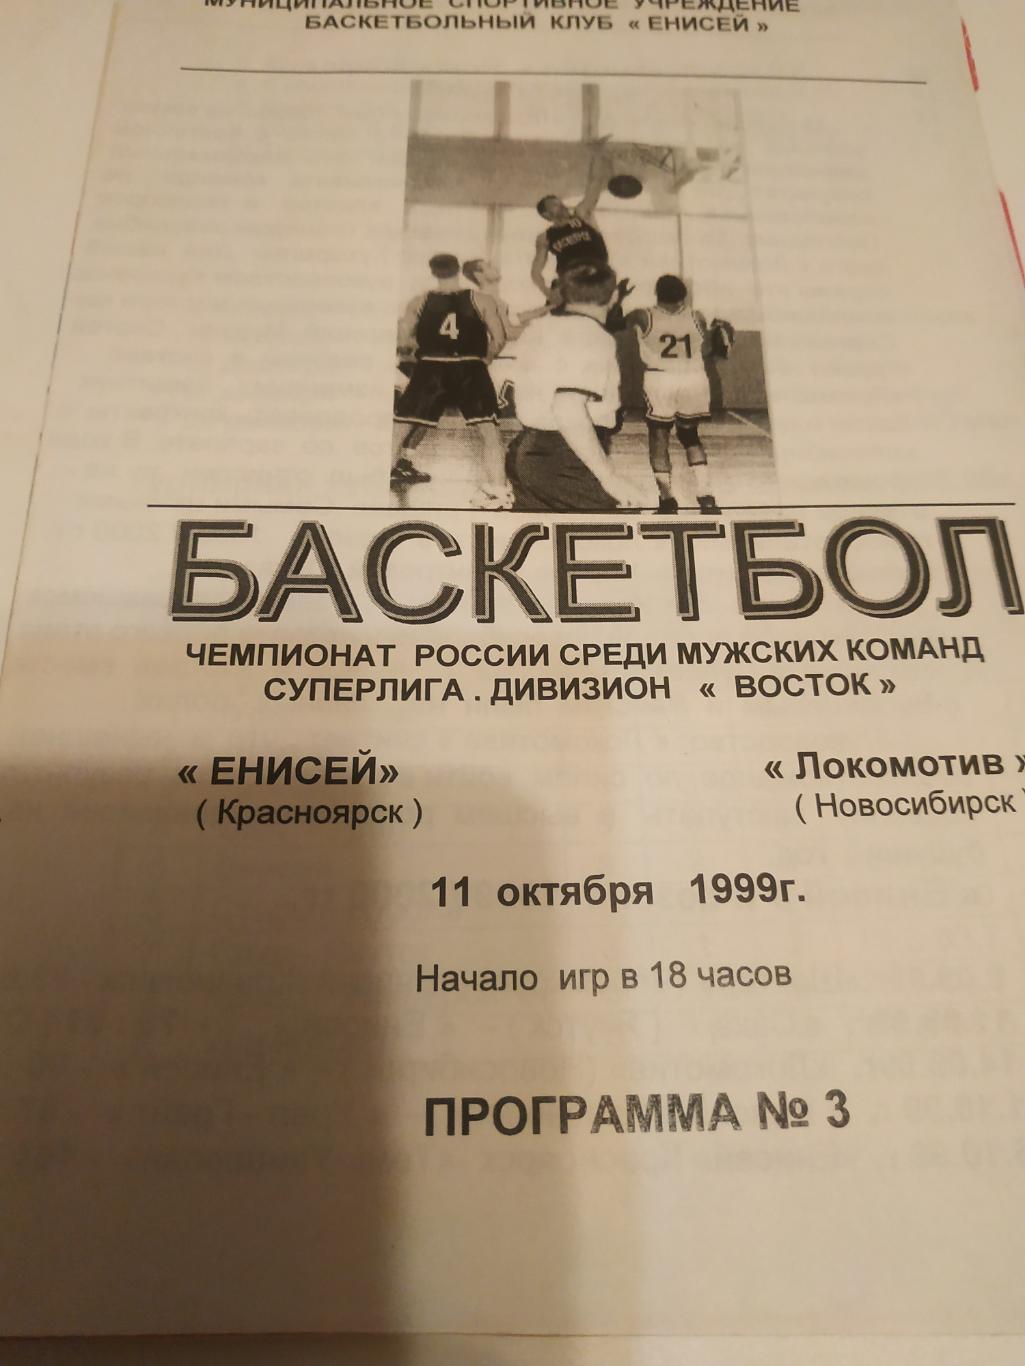 Енисей (Красноярск) - Локомотив (Новосибирск). 11.10.1999.